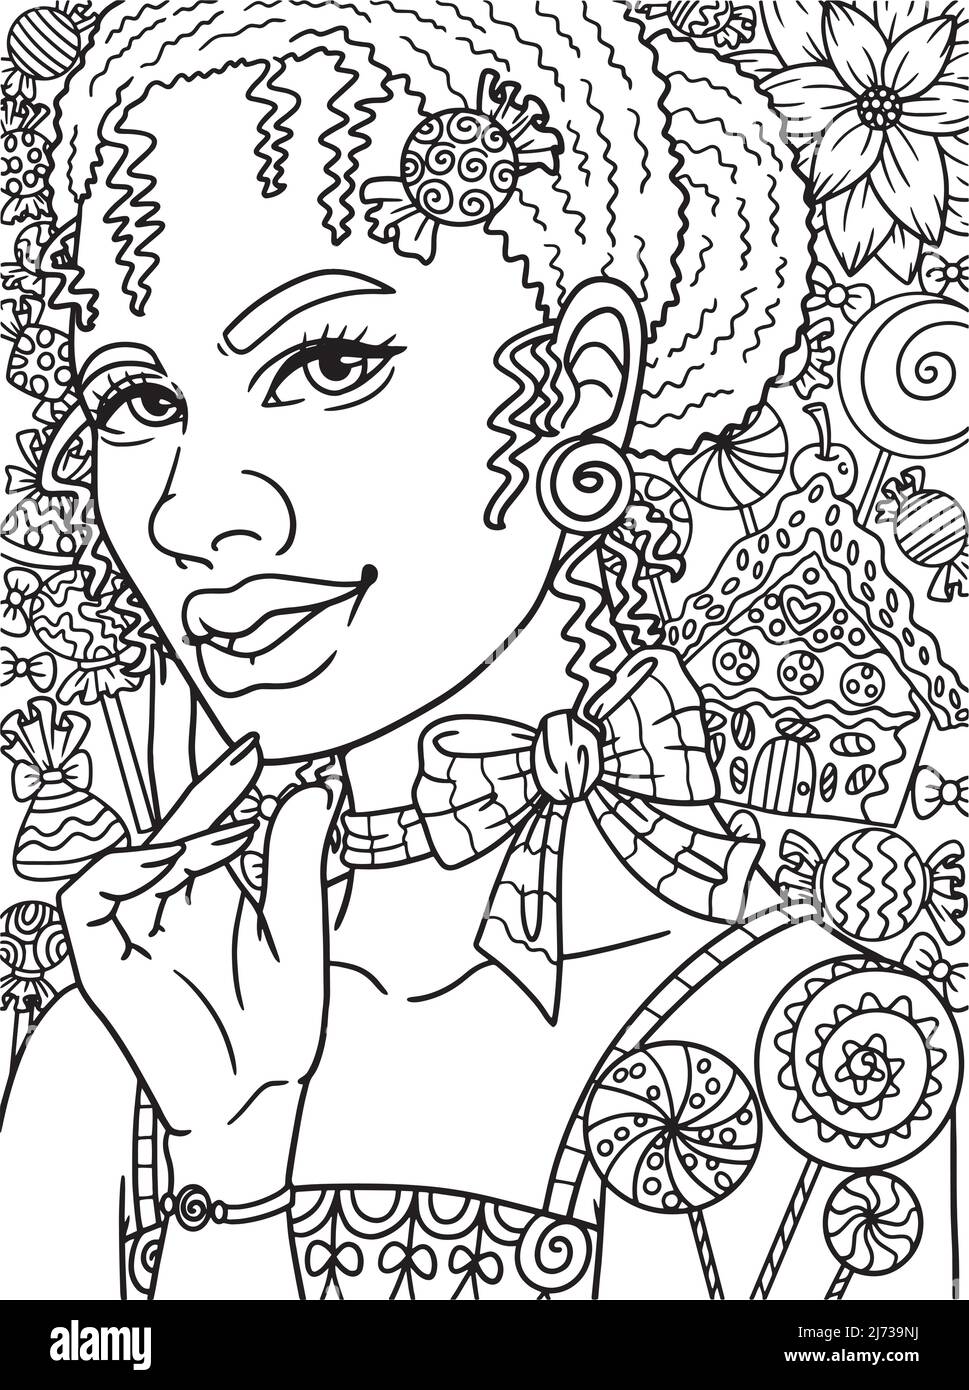 Afro American Woman Candy adulte coloriage Illustration de Vecteur